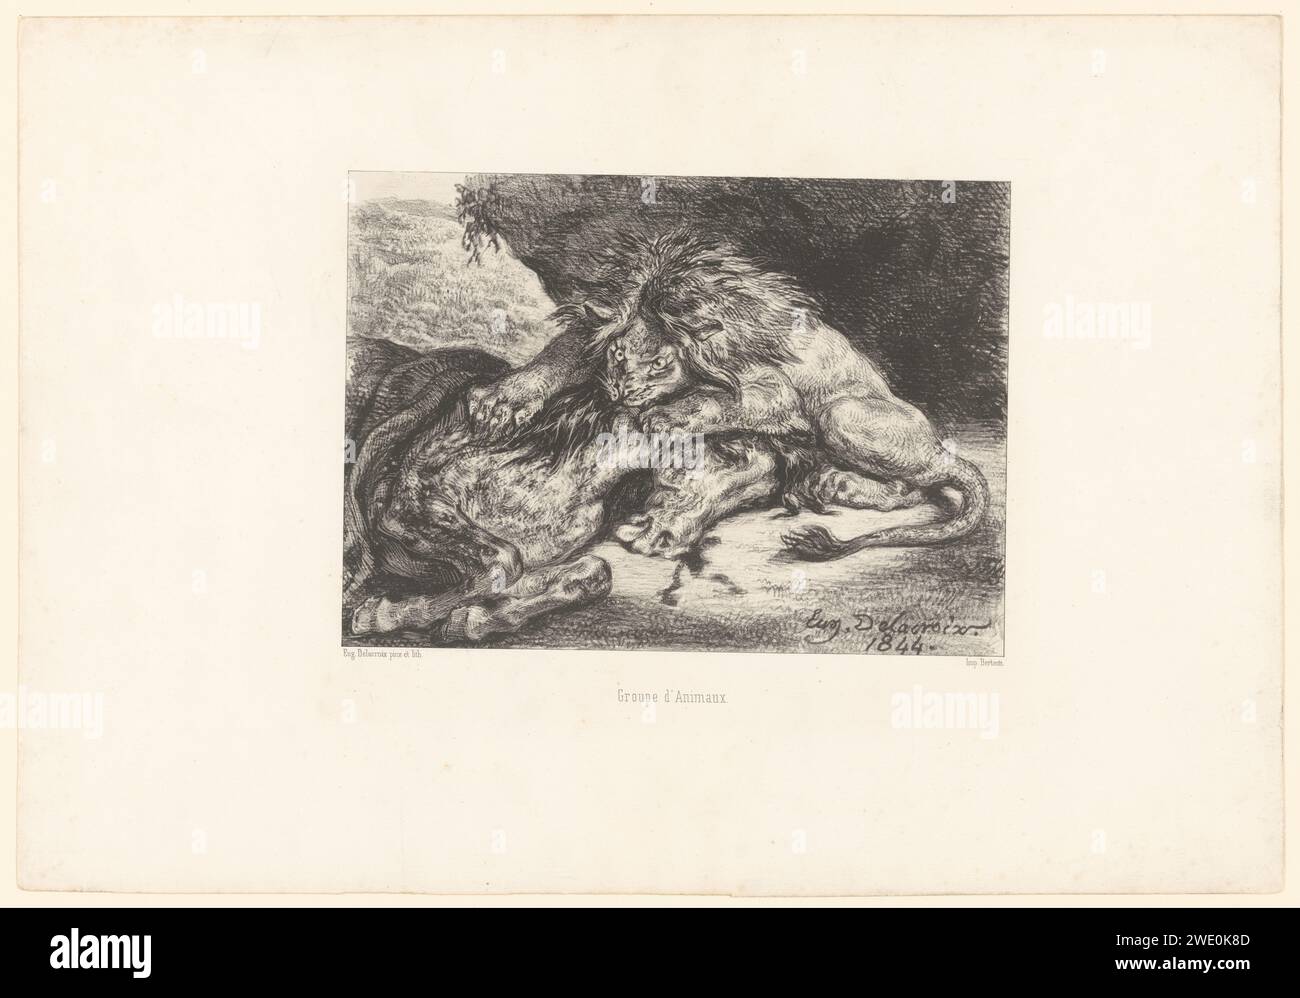 Lion dévore un cheval, Eugène Delacroix, 1844 tirage Paris papier bêtes de proie, animaux prédateurs : lion. cheval attaqué par un animal sauvage Banque D'Images